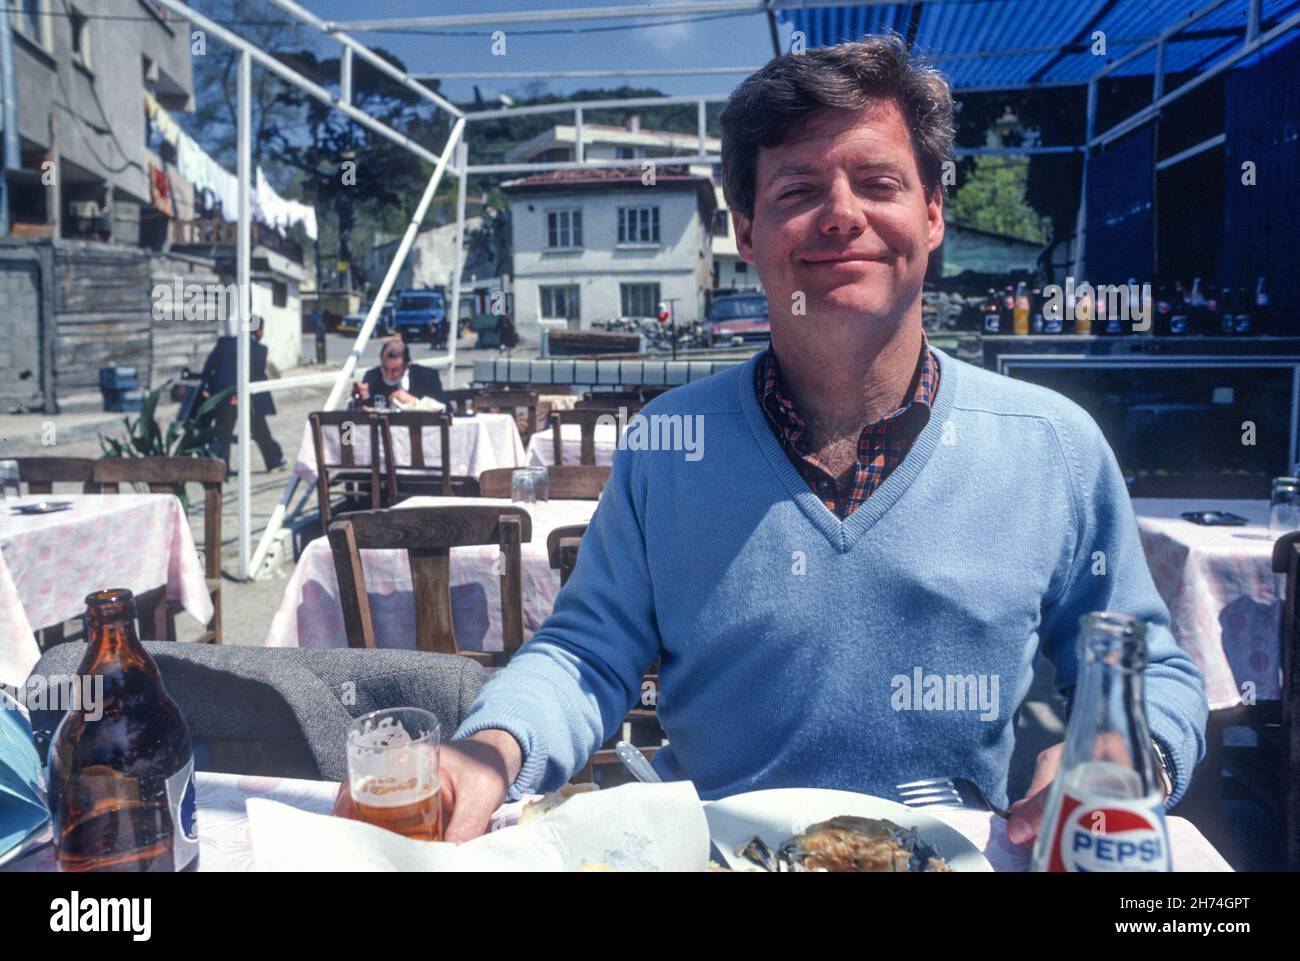 1981, Jeune Homme en vacances en profitant d'un restaurant en plein air Banque D'Images